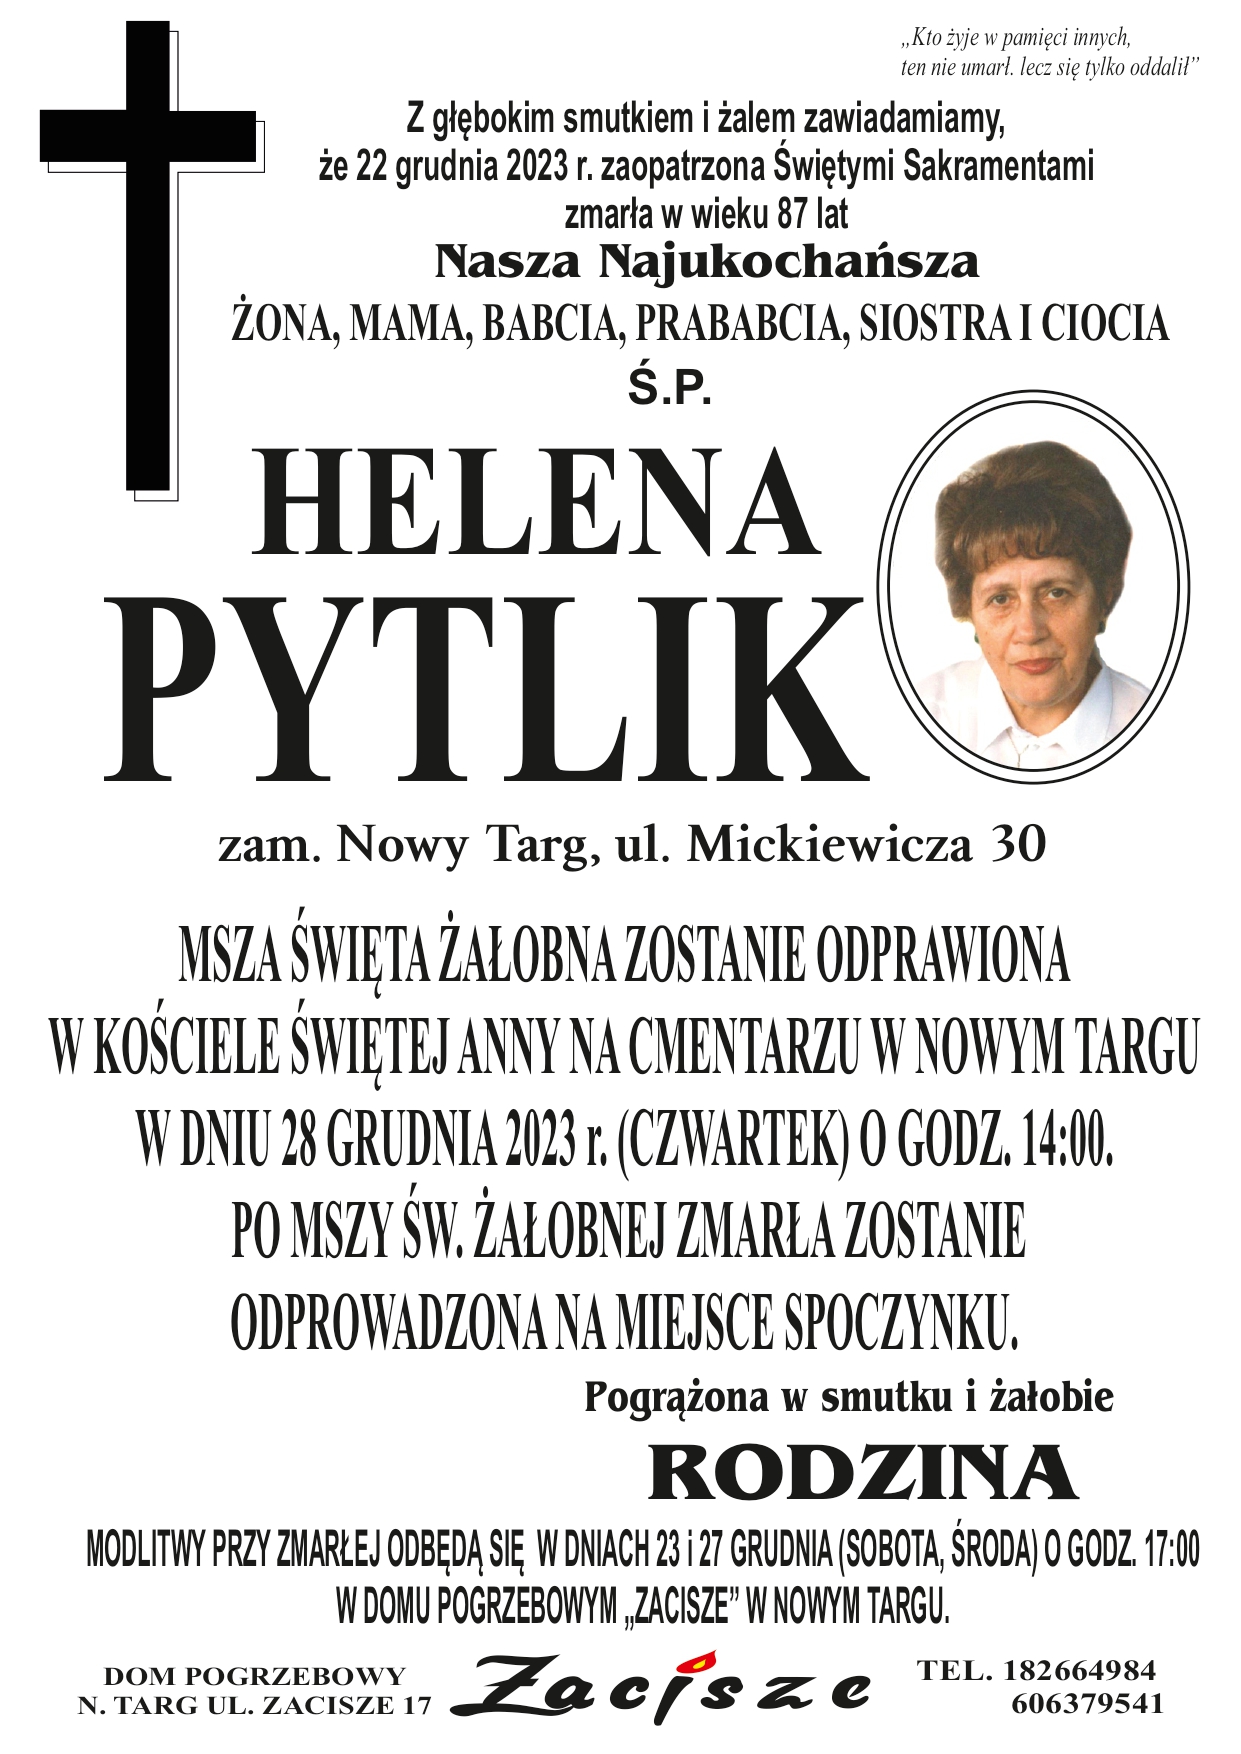 Helena Pytlik